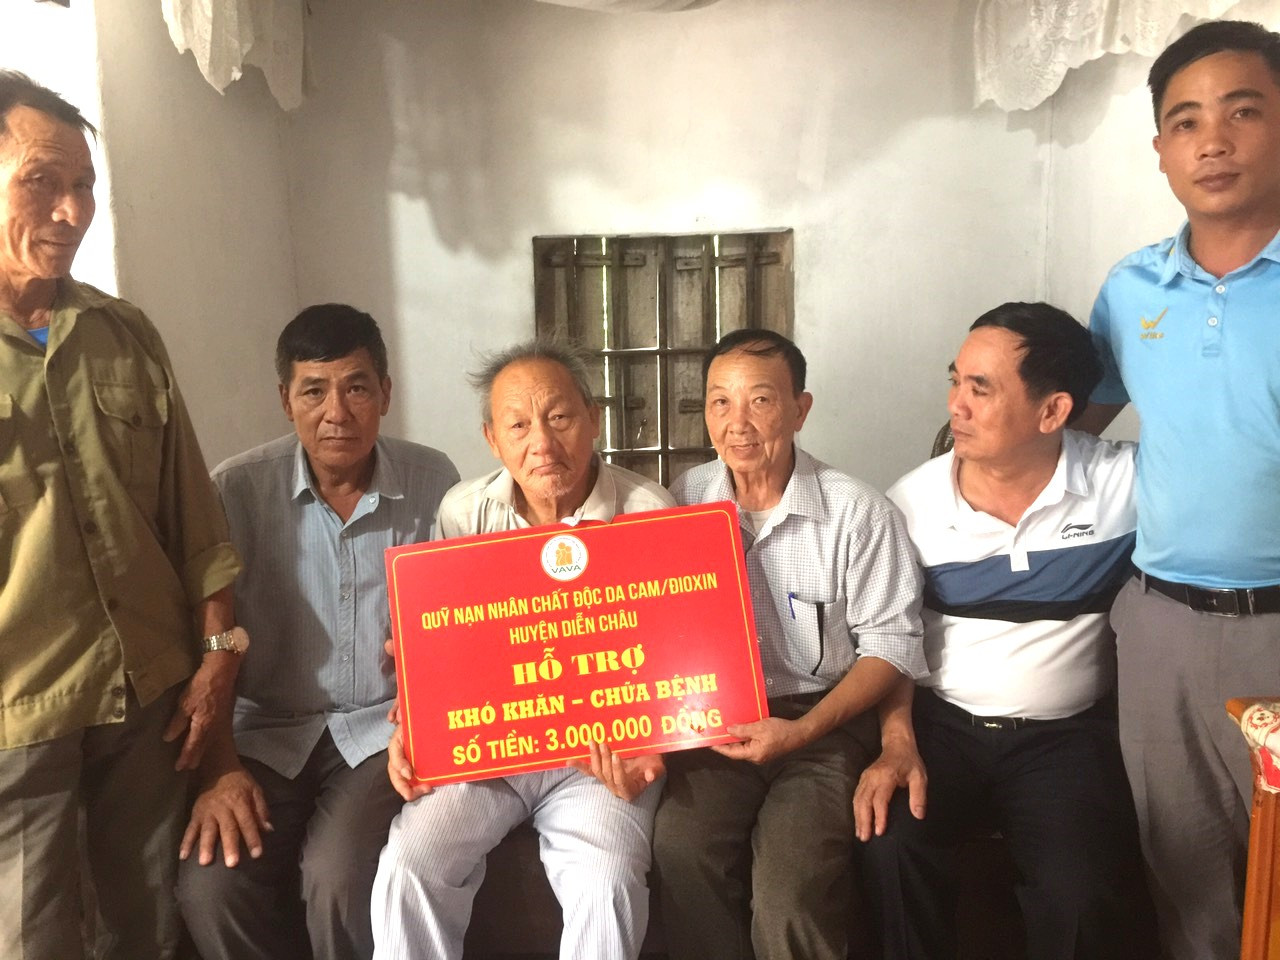 bna_Hội nạn nhân chất độc da cam huyện Diễn Châu trao tiền hỗ trợ cho một nạn nhan chất độc da cam ở xã Diễn Yên.jpg